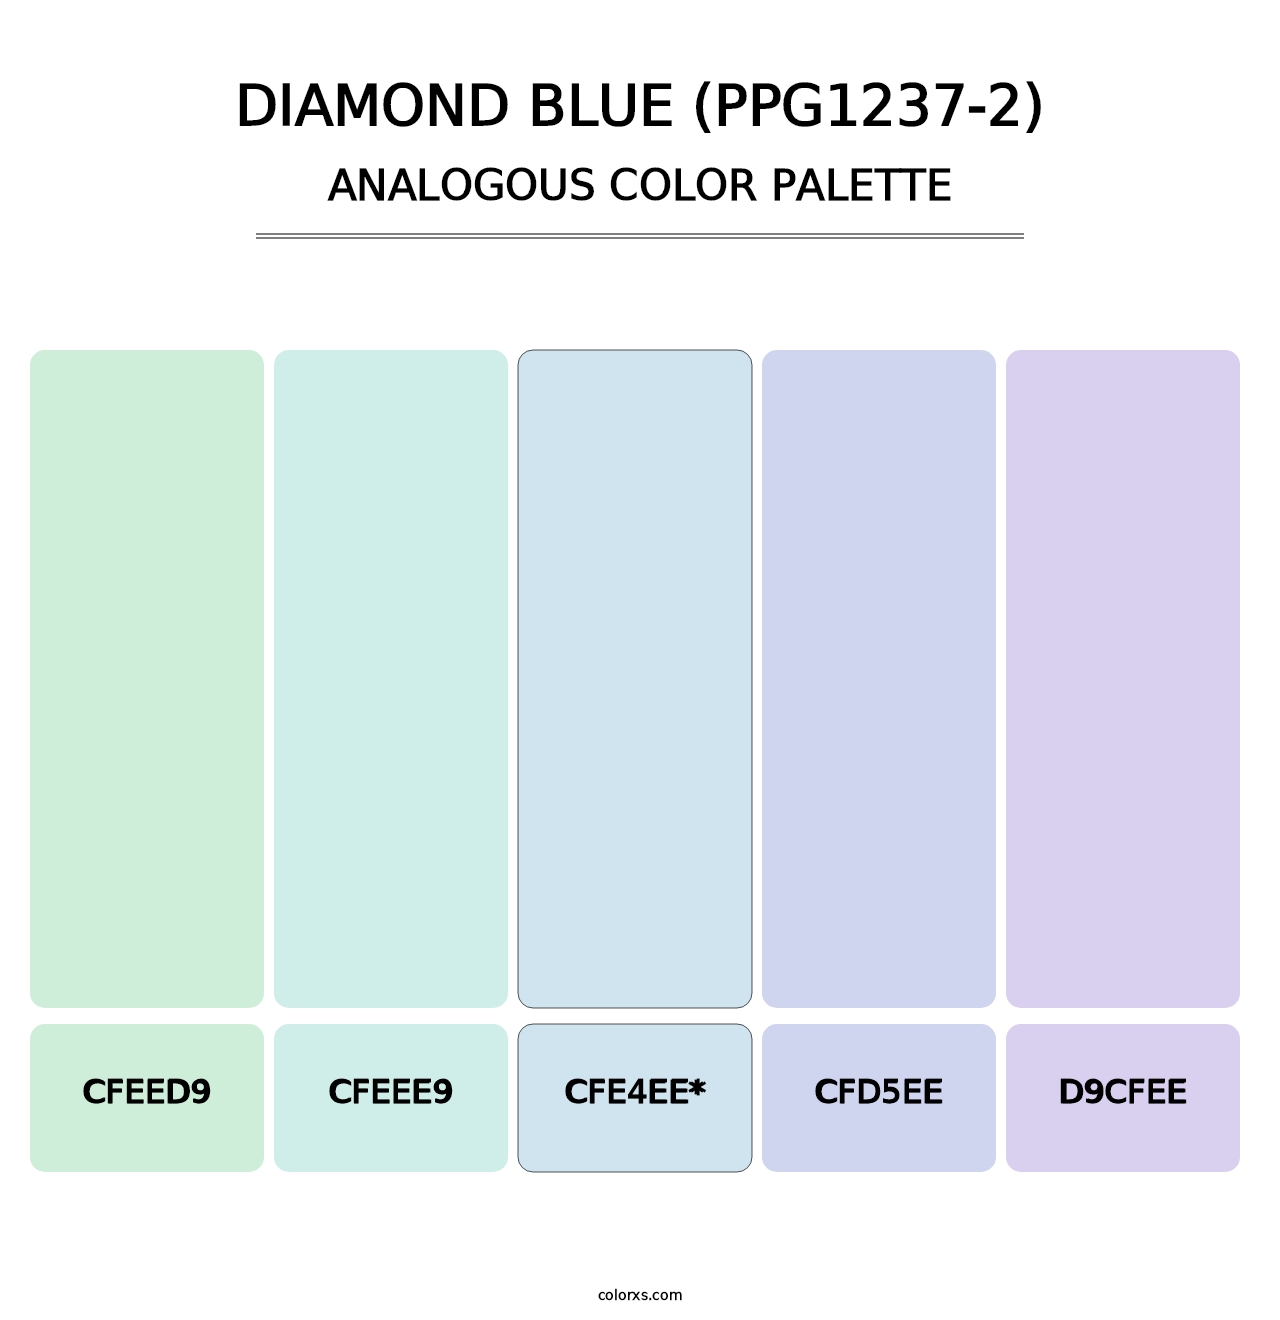 Diamond Blue (PPG1237-2) - Analogous Color Palette